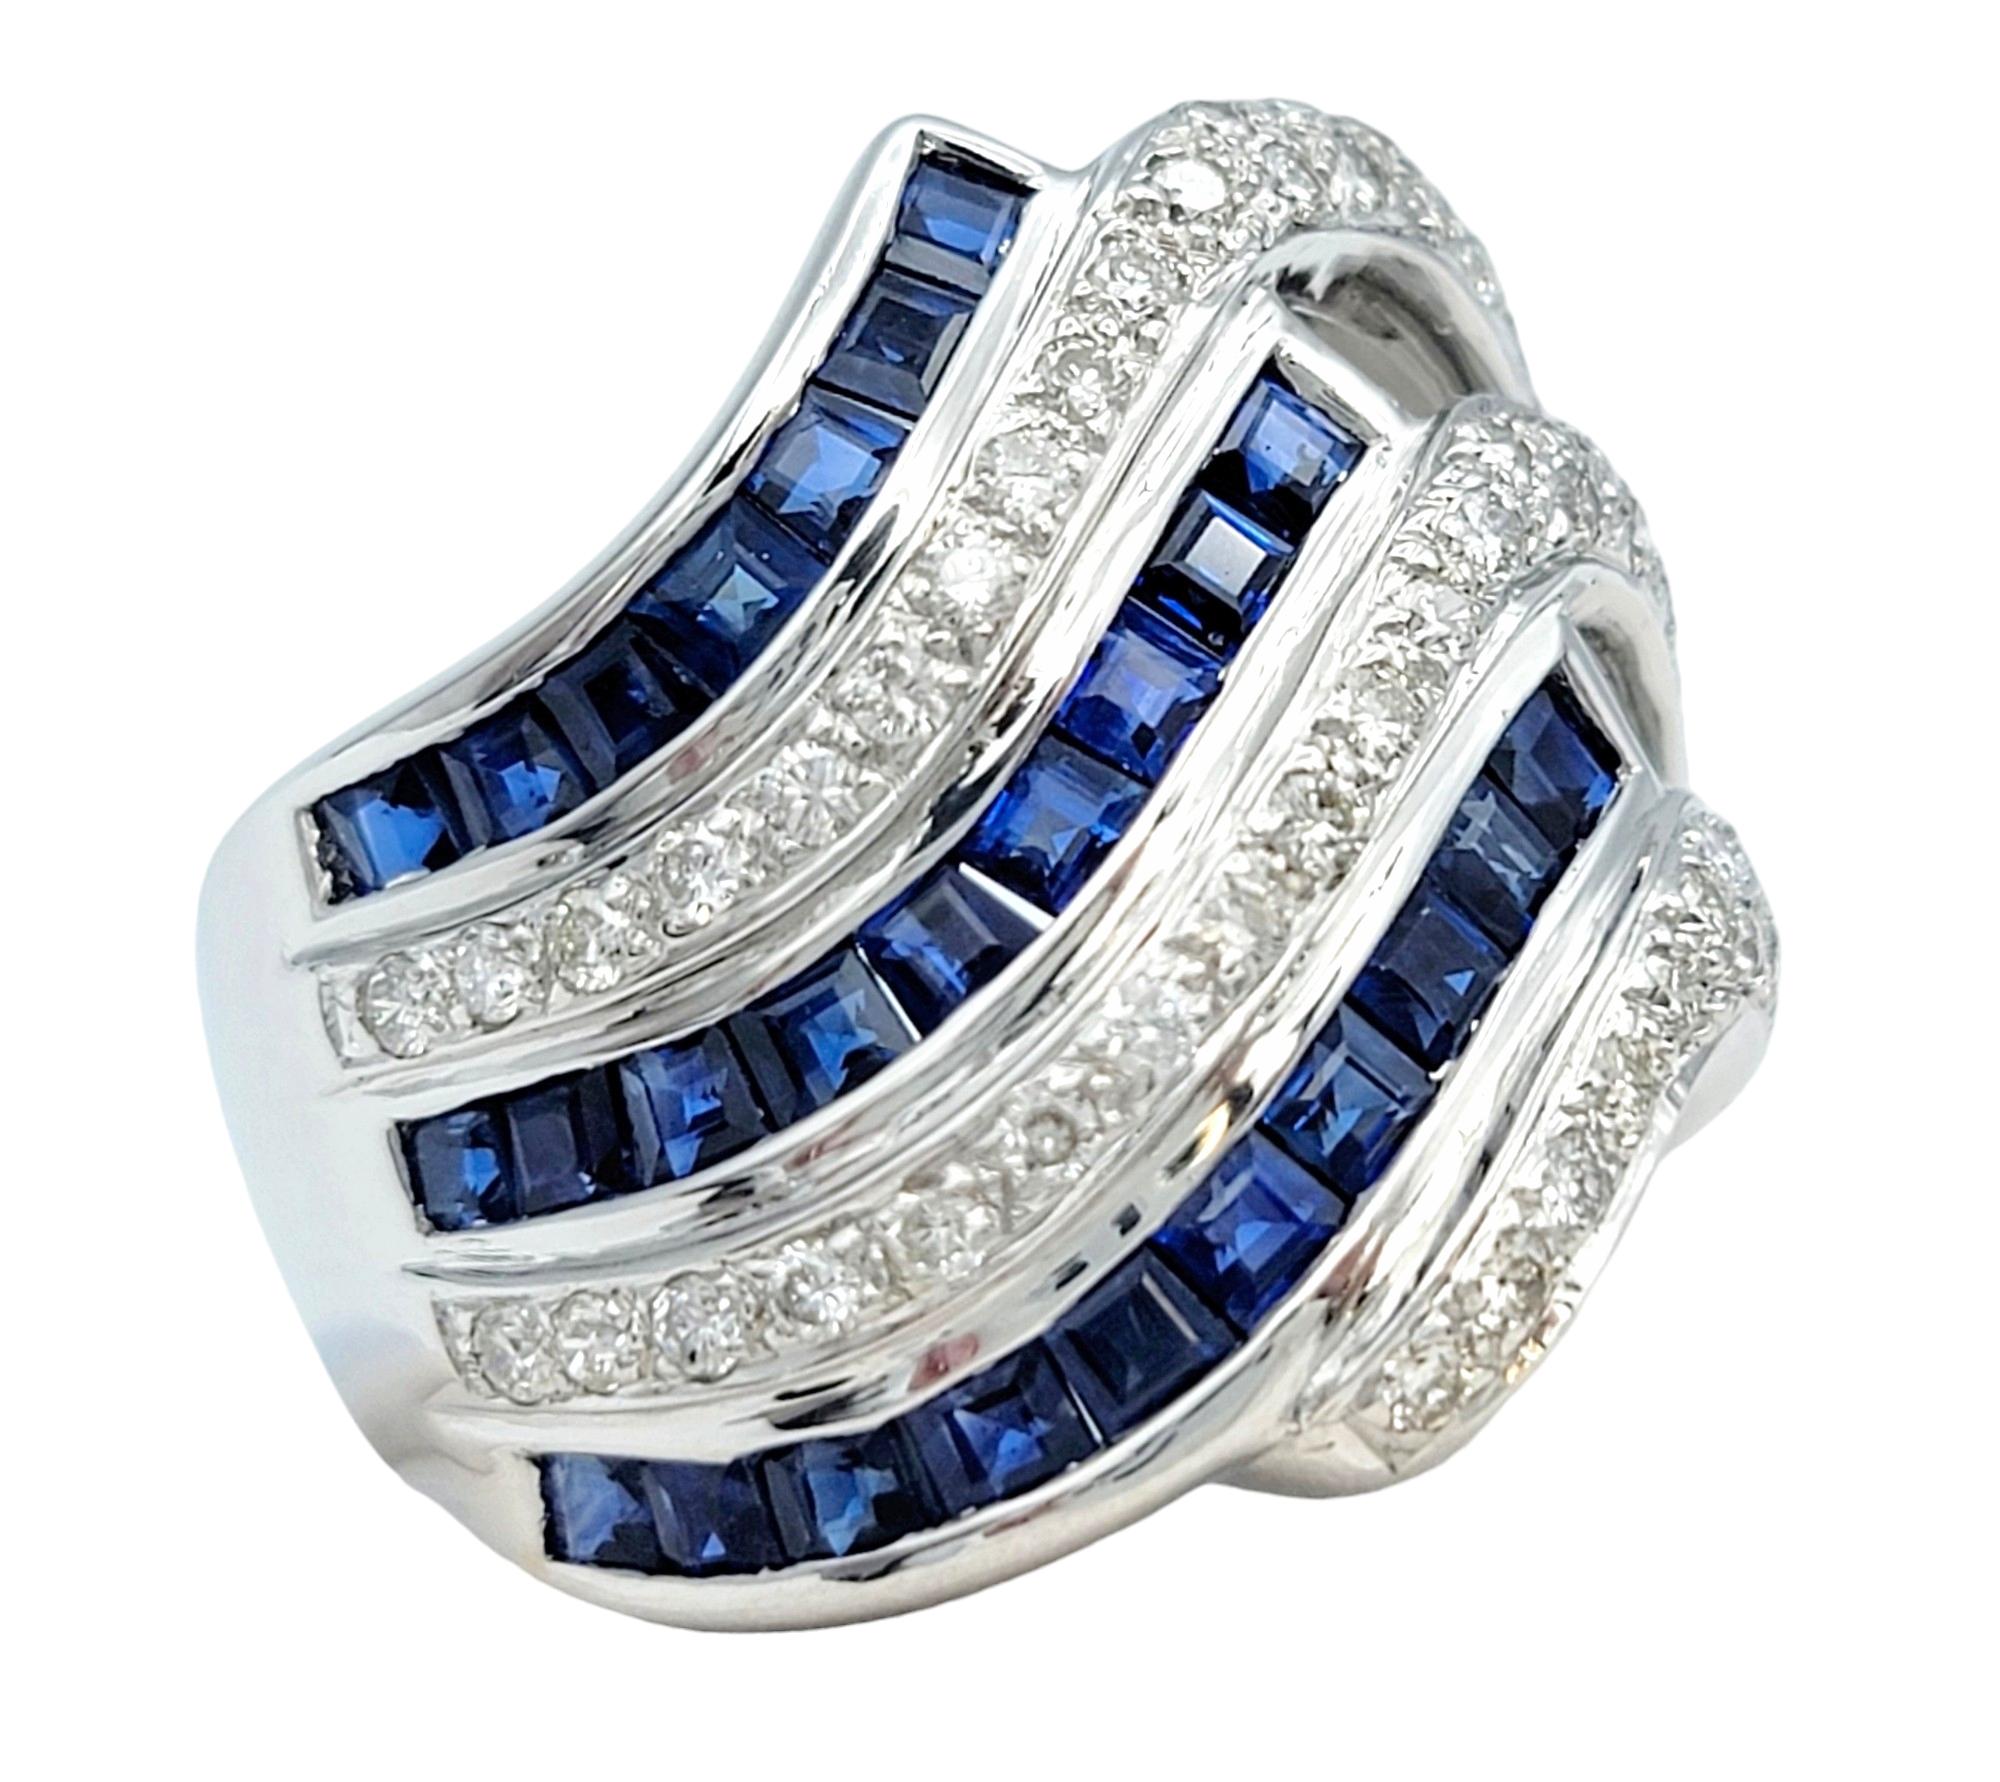 Ring Größe: 7.5

Dieser wunderschöne Ring, gefasst in luxuriösem 18-karätigem Weißgold, ist ein unverwechselbares und auffälliges Stück mit einem einzigartigen Wellendesign. In dem leicht schrägen Wellenmuster wechseln sich Reihen von blauen